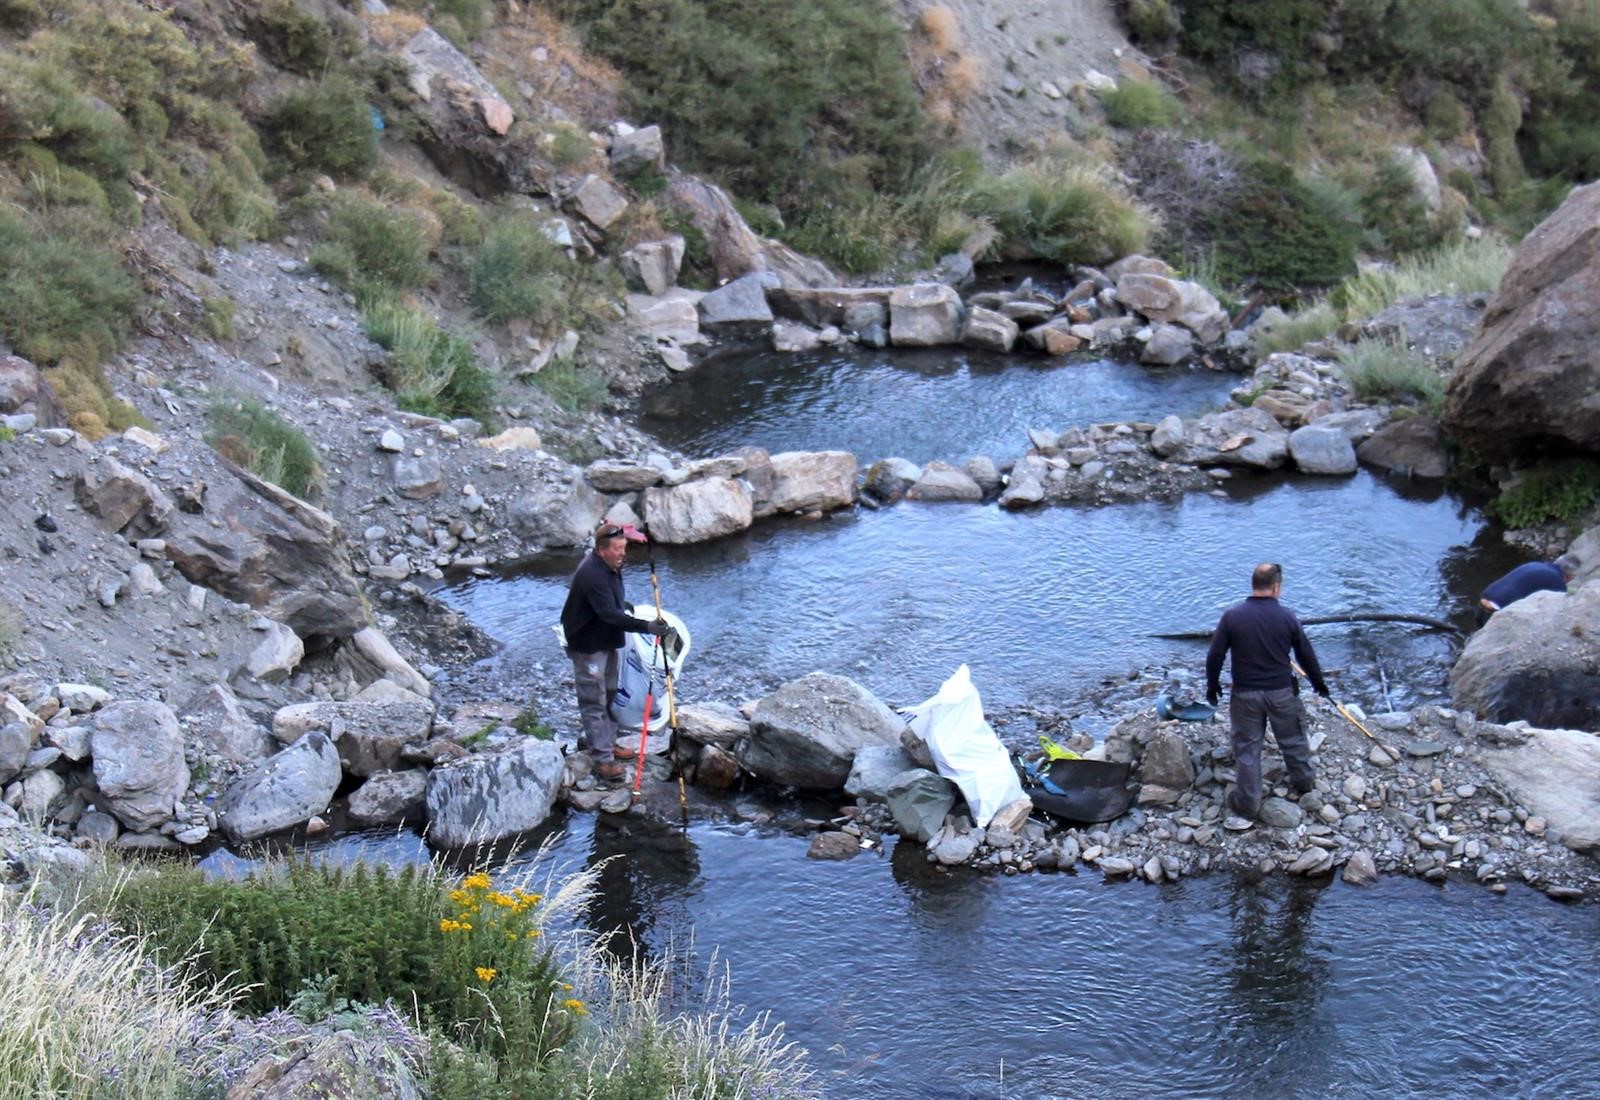 Sierra Nevada activa una campaña de sensibilización ambiental en temporada de verano